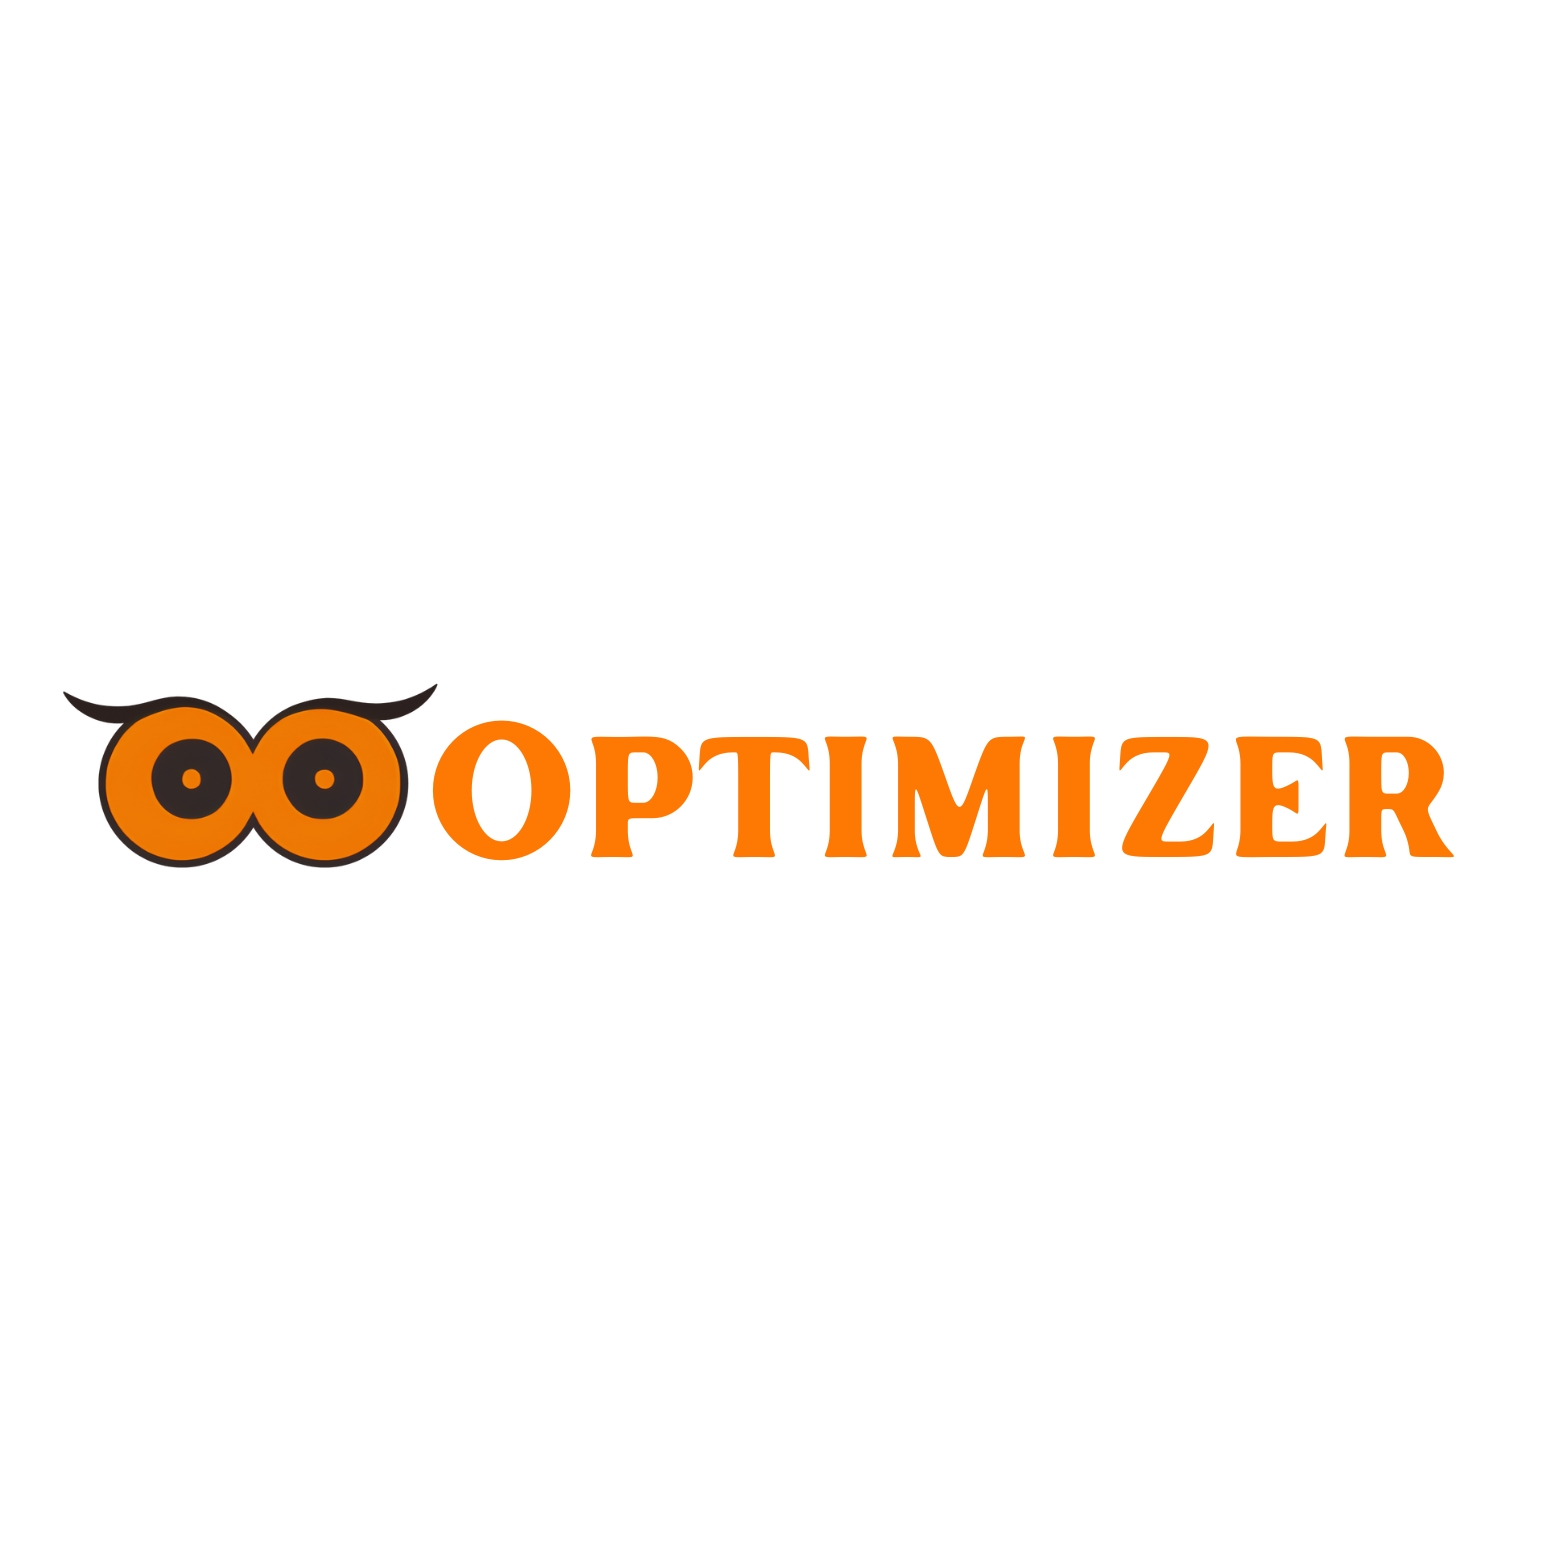 oooptimizer